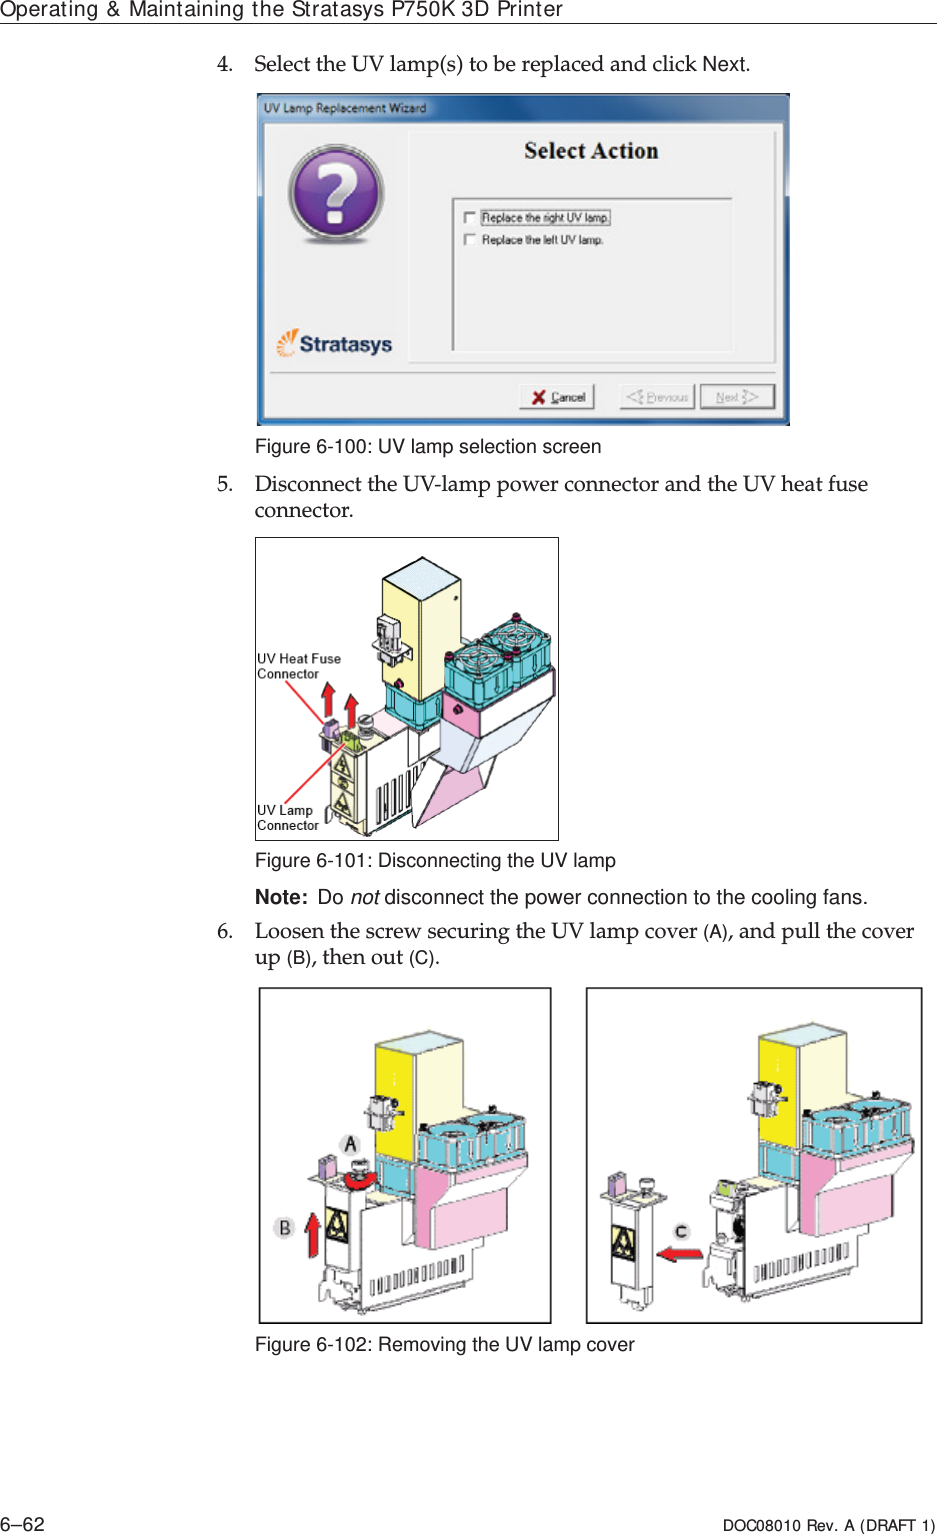 Operating &amp; Maintaining the Stratasys P750K 3D Printer6–62 DOC08010 Rev. A (DRAFT 1)4. SelectȱtheȱUVȱlamp(s)ȱtoȱbeȱreplacedȱandȱclickȱNext.Figure 6-100: UV lamp selection screen5. DisconnectȱtheȱUVȬlampȱpowerȱconnectorȱandȱtheȱUVȱheatȱfuseȱconnector.Figure 6-101: Disconnecting the UV lamp Note: Do not disconnect the power connection to the cooling fans.6. LoosenȱtheȱscrewȱsecuringȱtheȱUVȱlampȱcoverȱ(A),ȱandȱpullȱtheȱcoverȱupȱ(B),ȱthenȱoutȱ(C).Figure 6-102: Removing the UV lamp cover